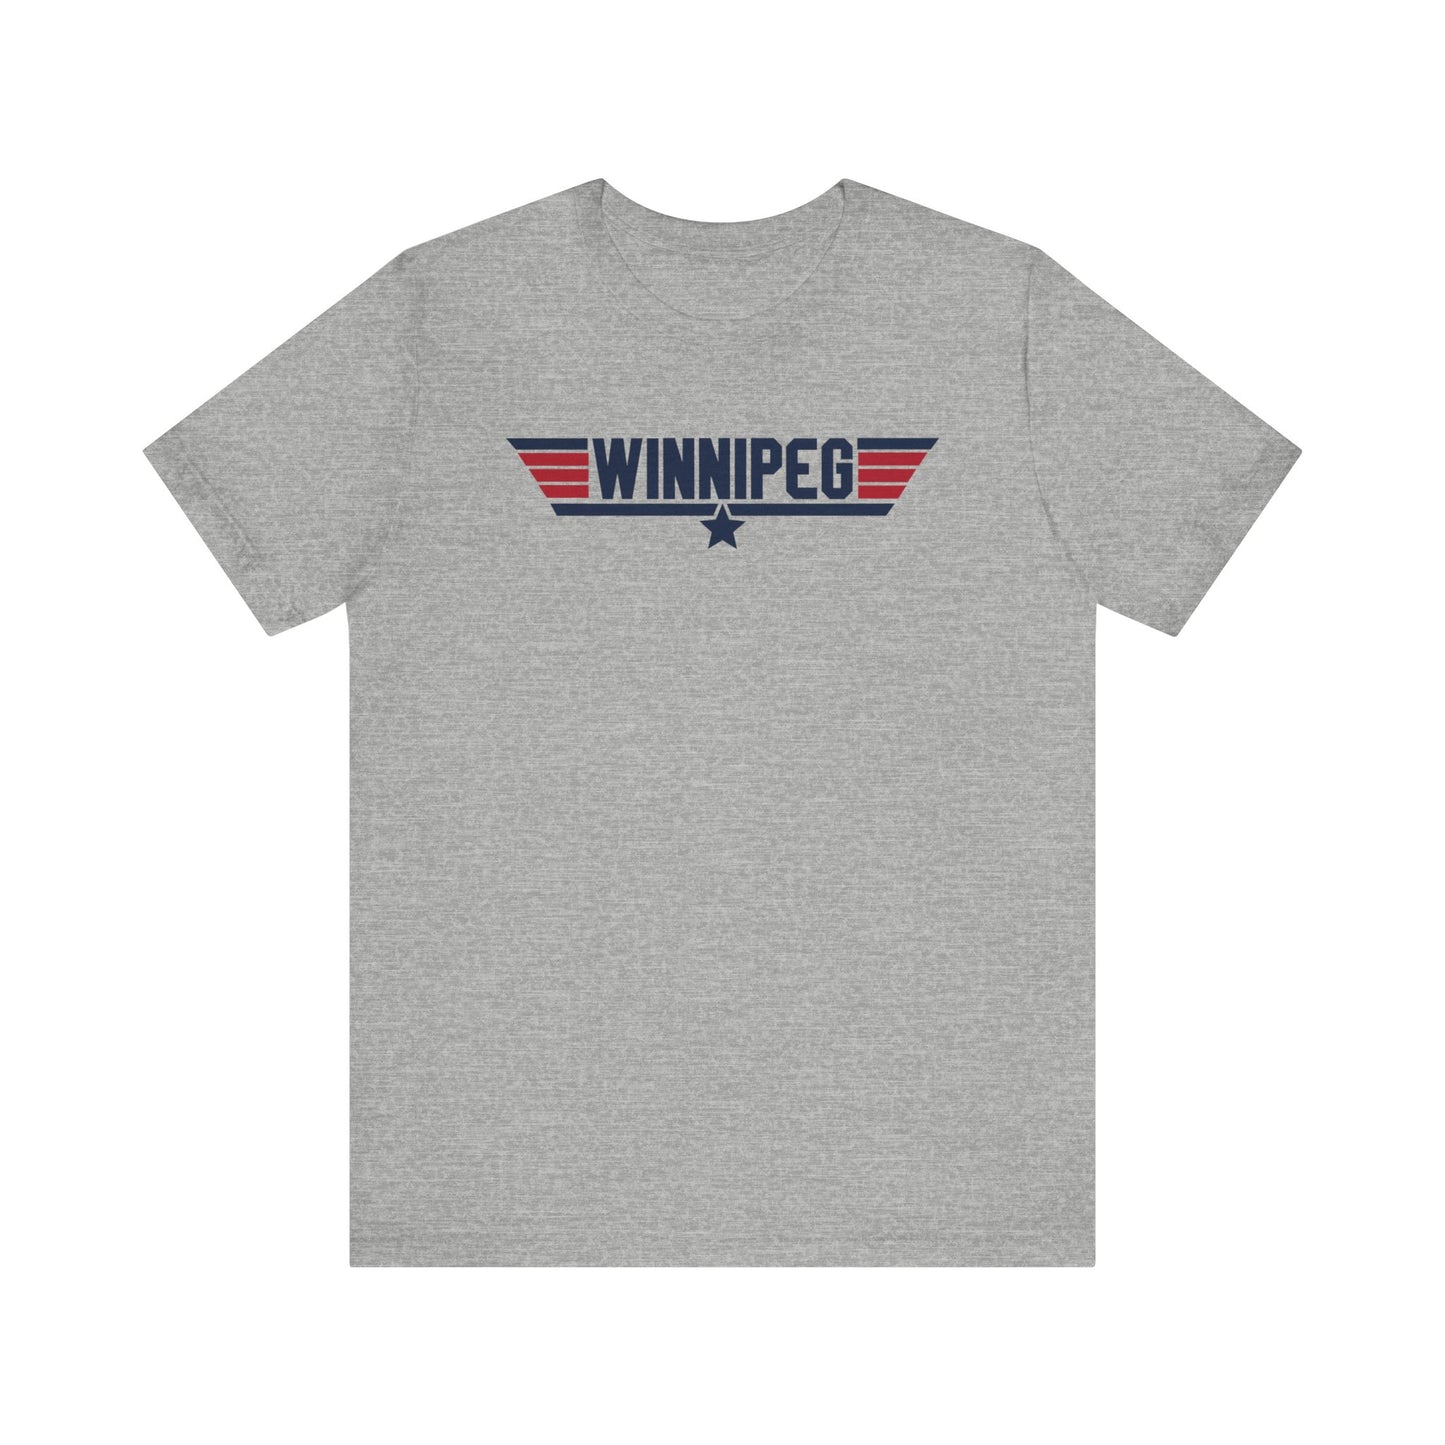 Winnipeg - Top Gun Shirt